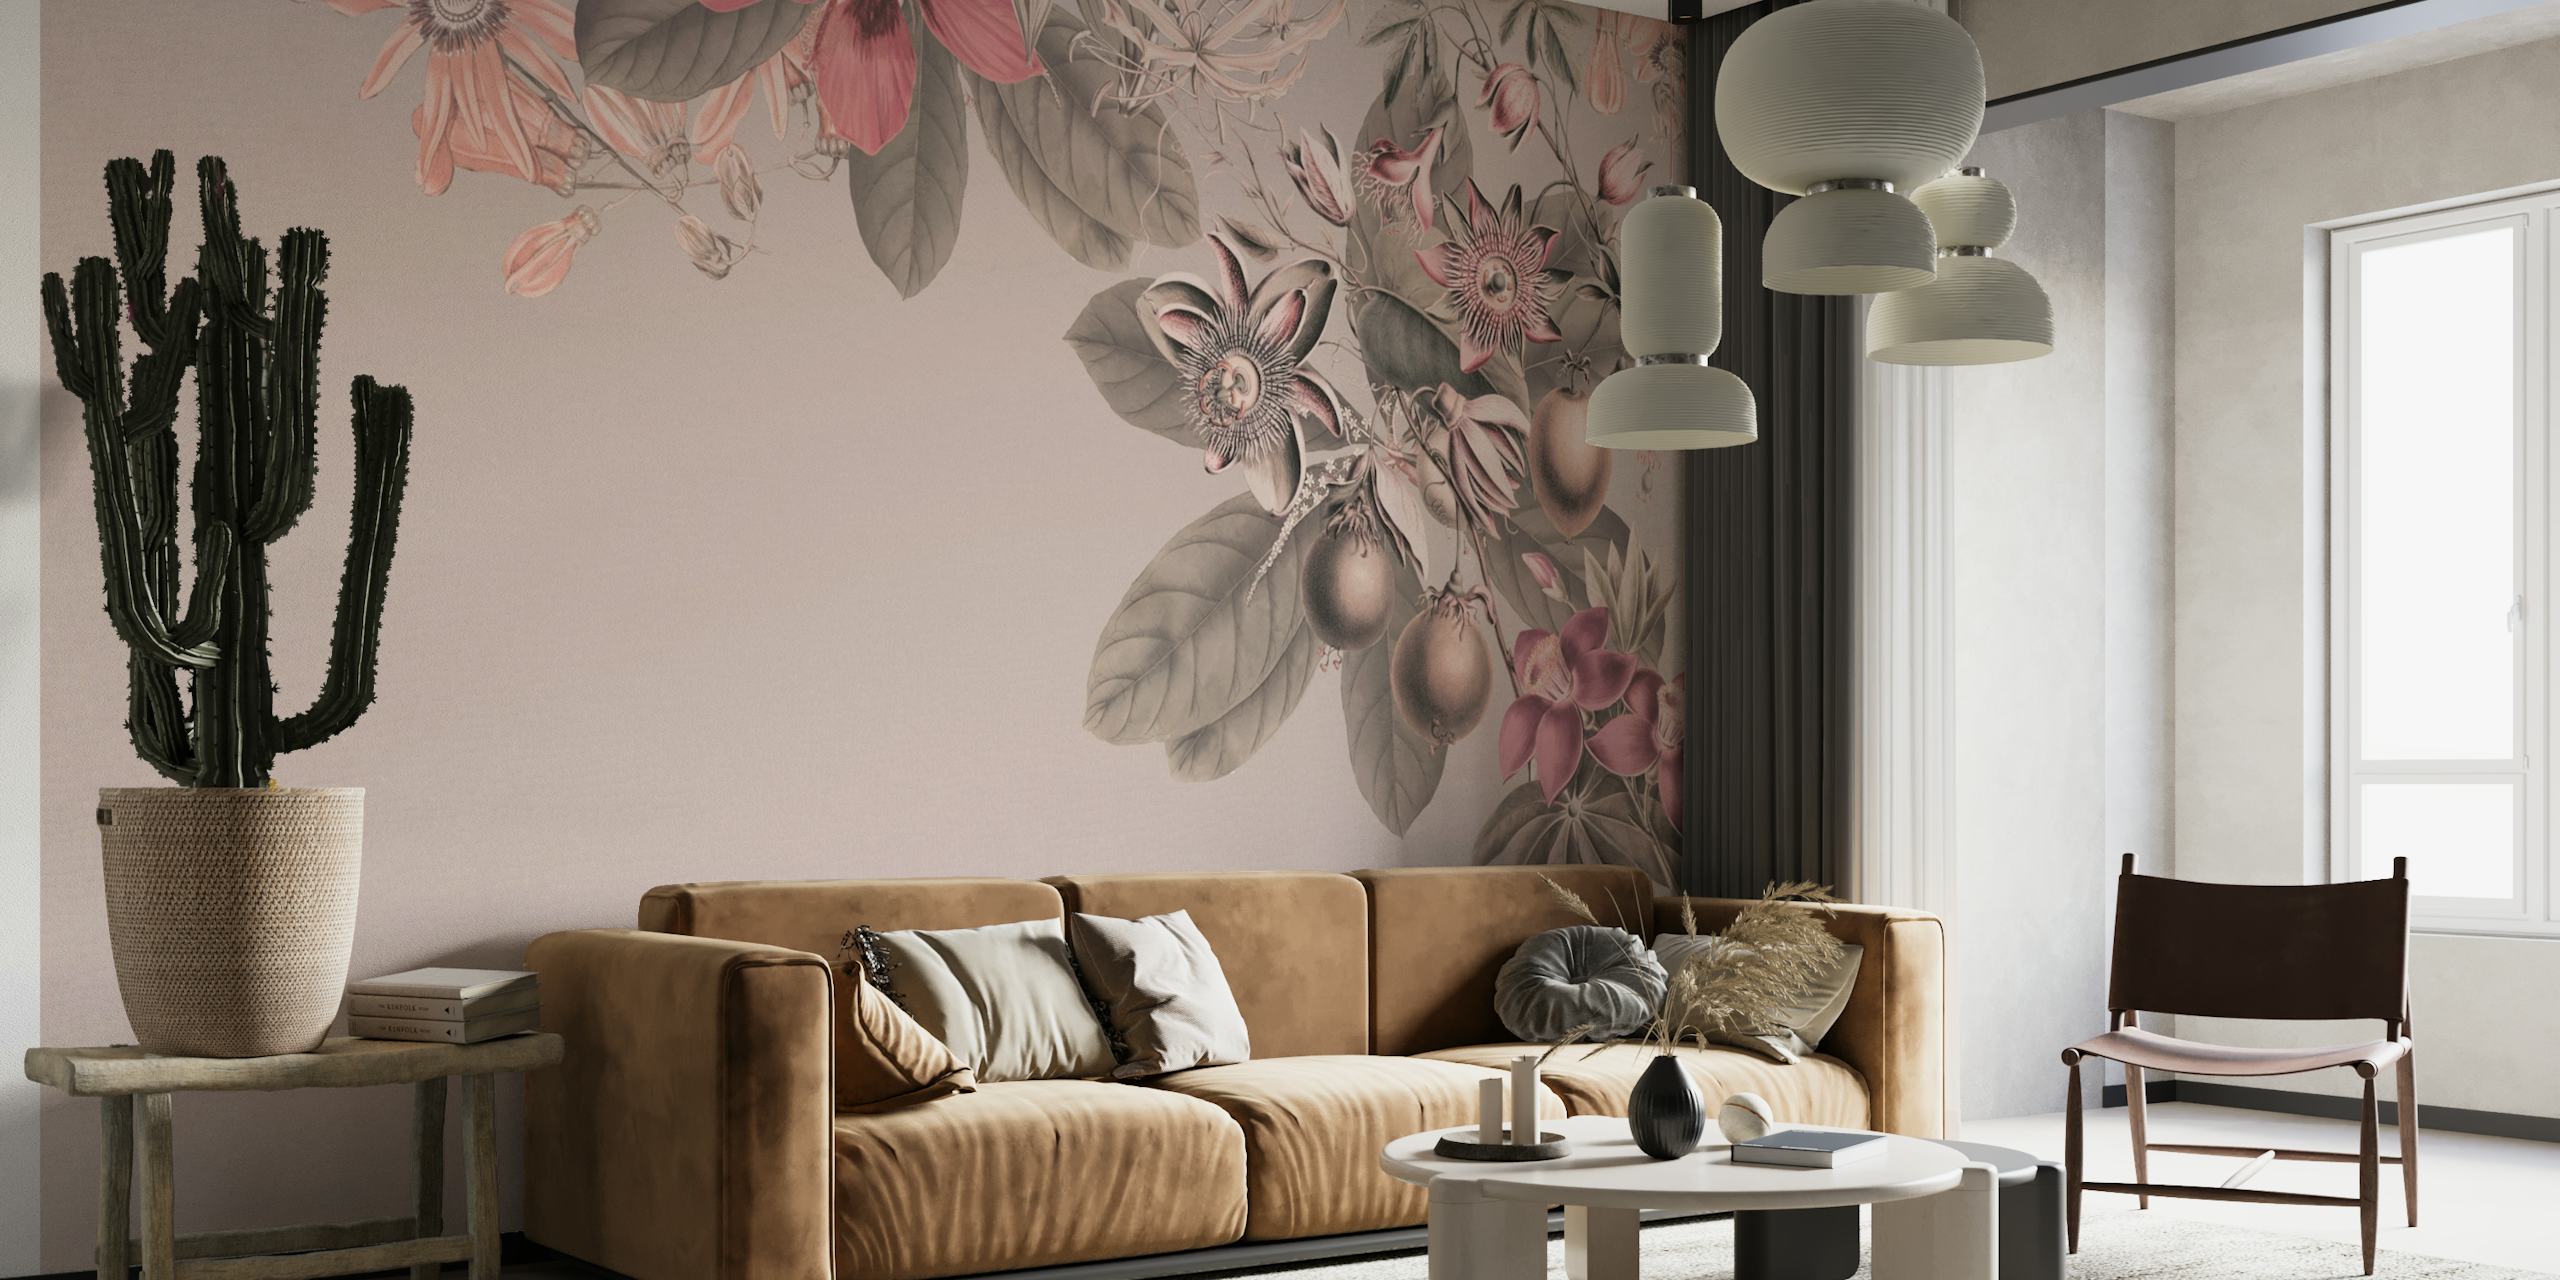 fiori tropicali rosa pastello su una parete con sfondo tenue